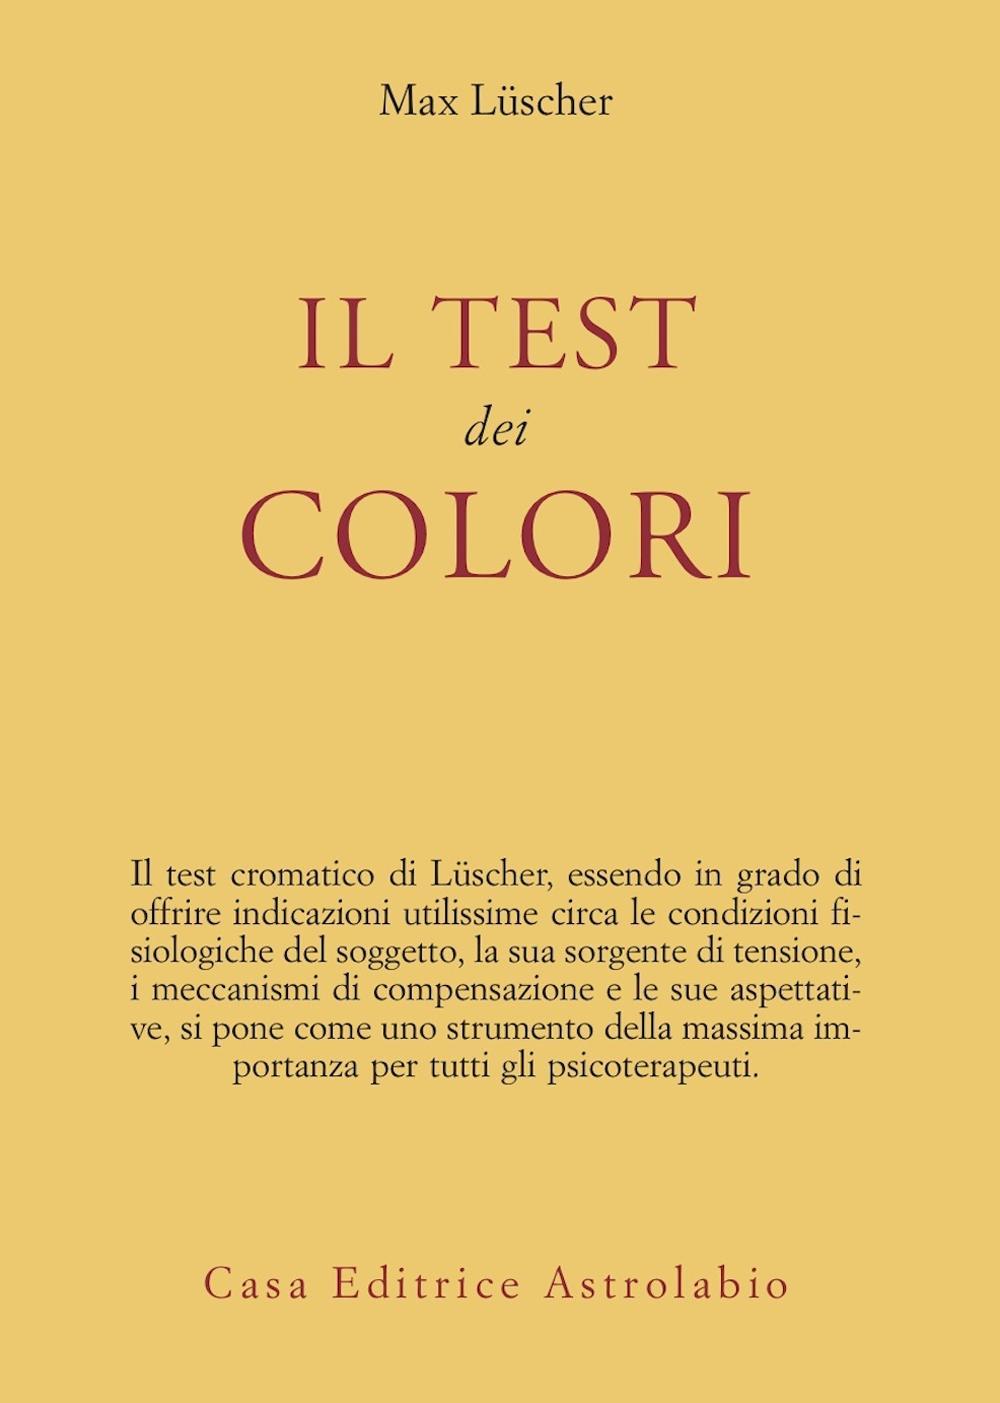 Il test dei colori